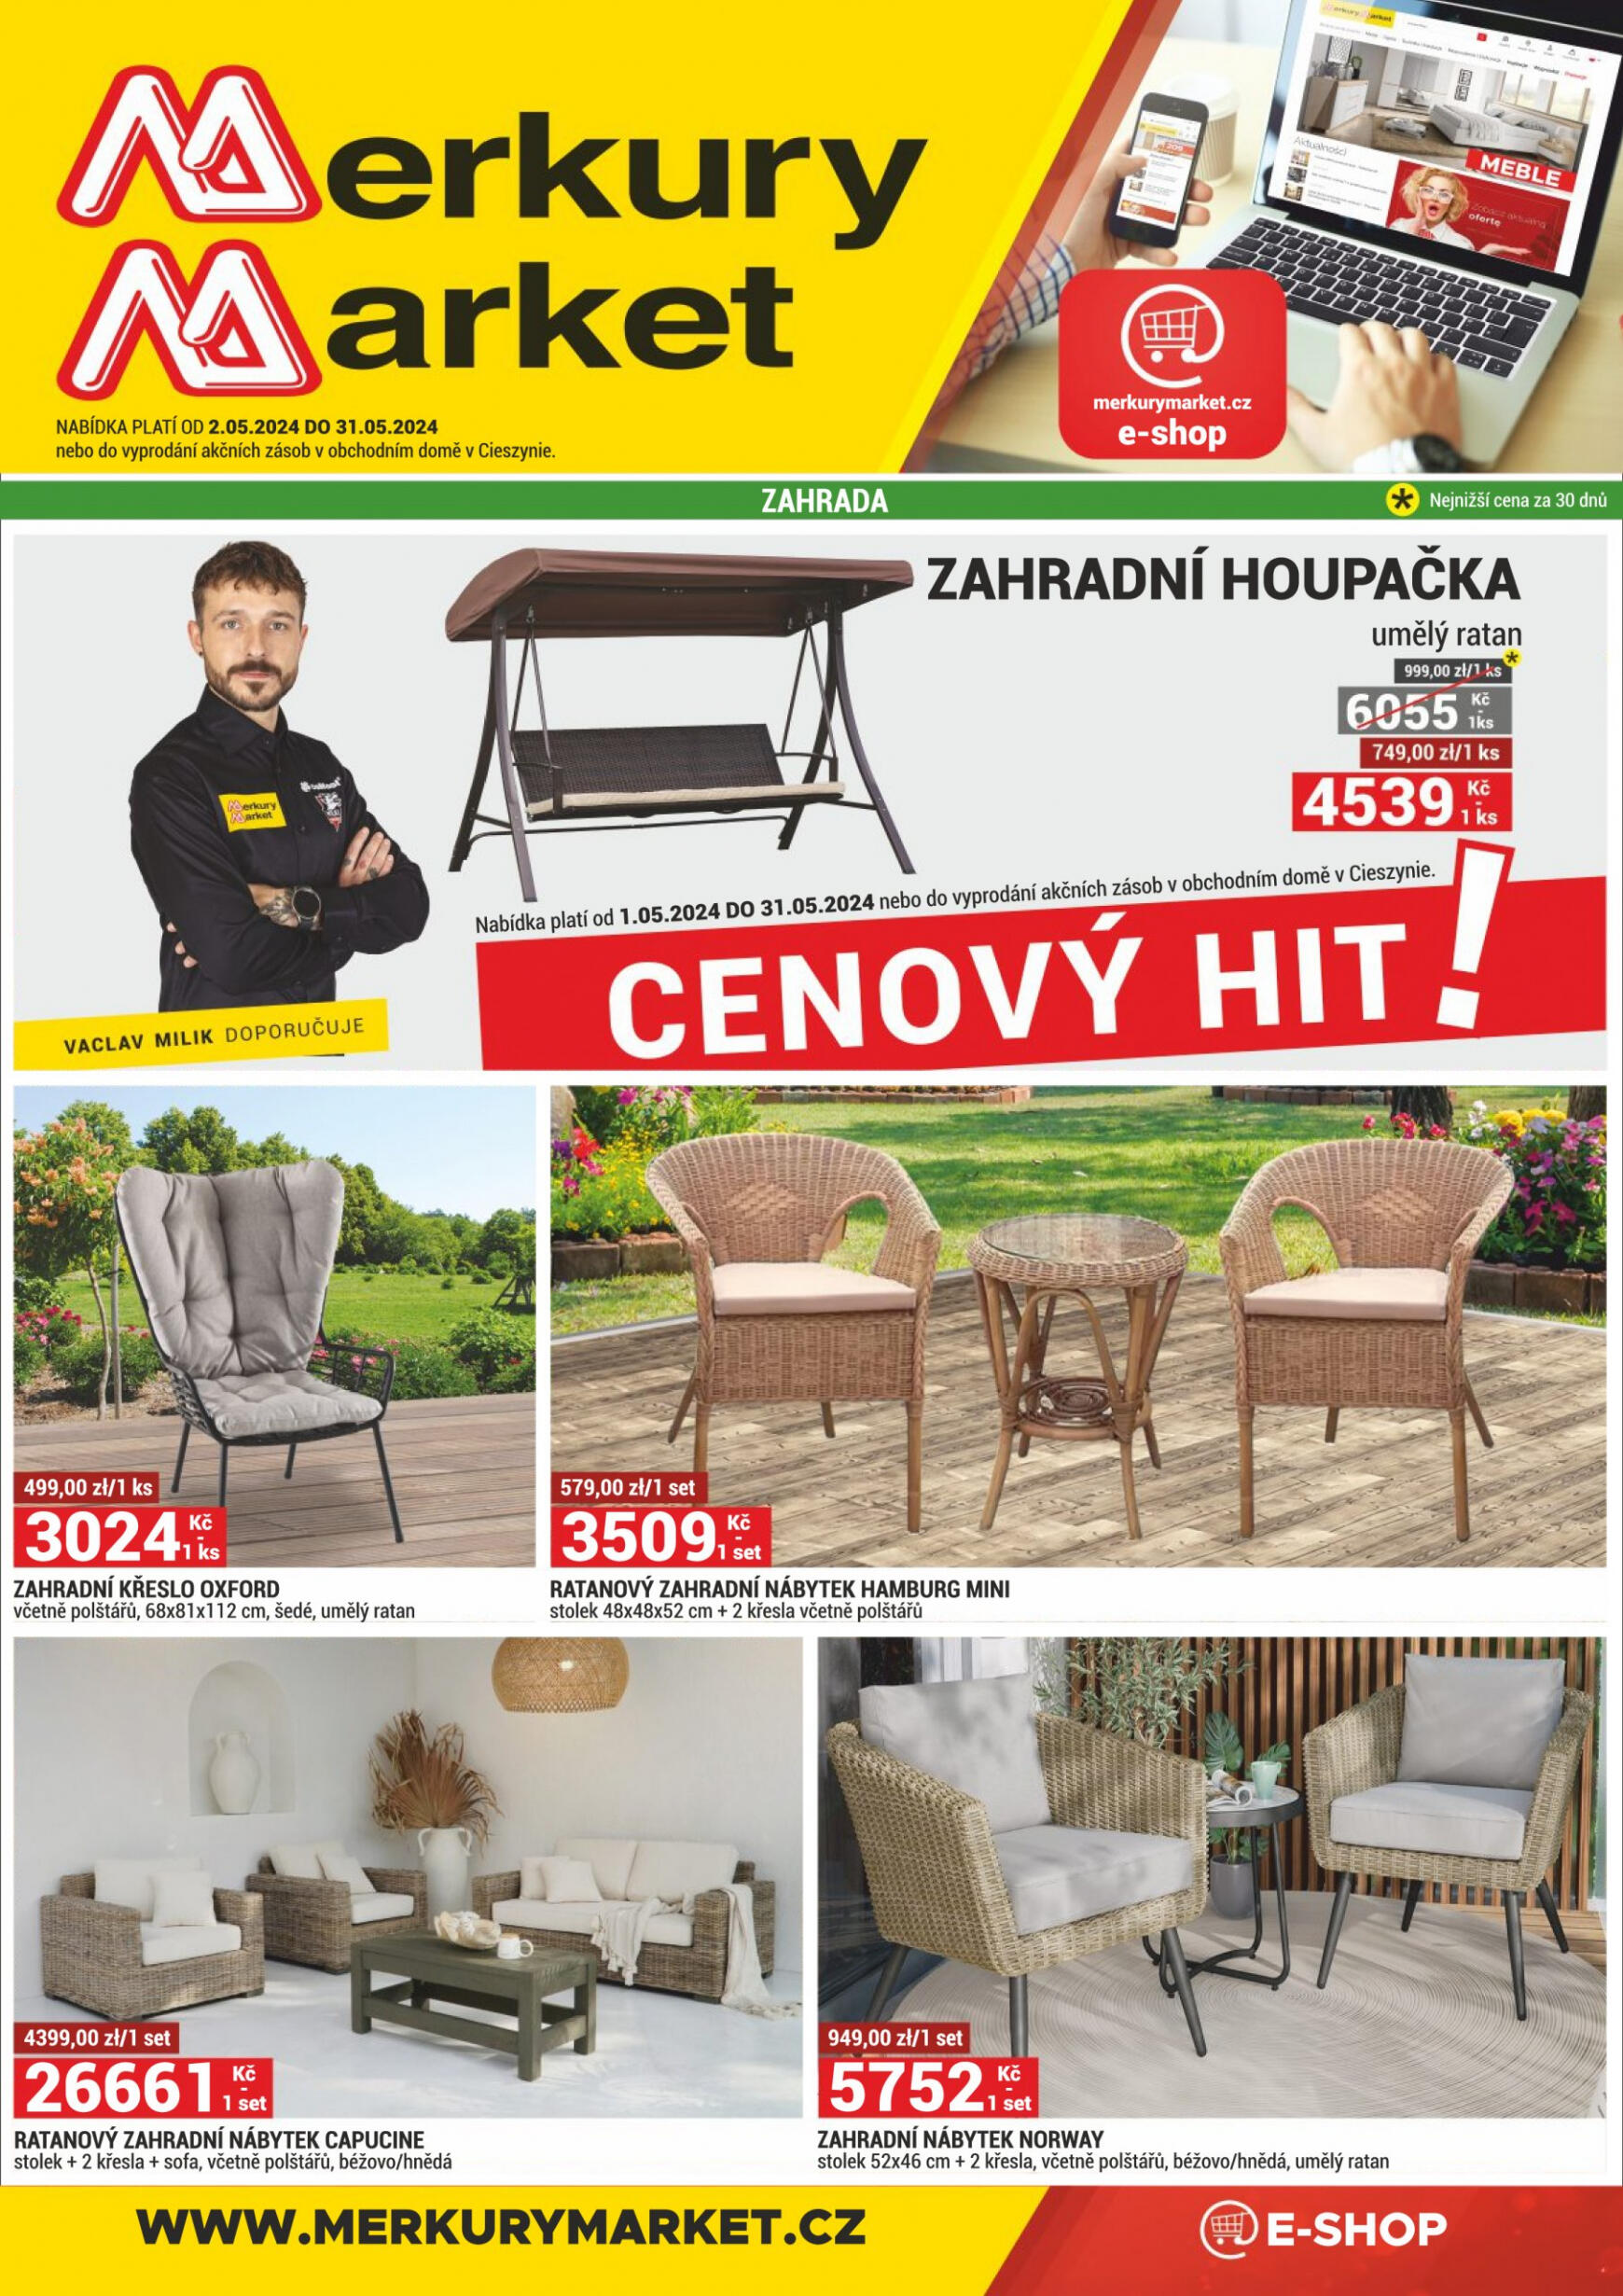 merkury-market - Leták Merkury Market aktuální 02.05. - 31.05. - page: 1